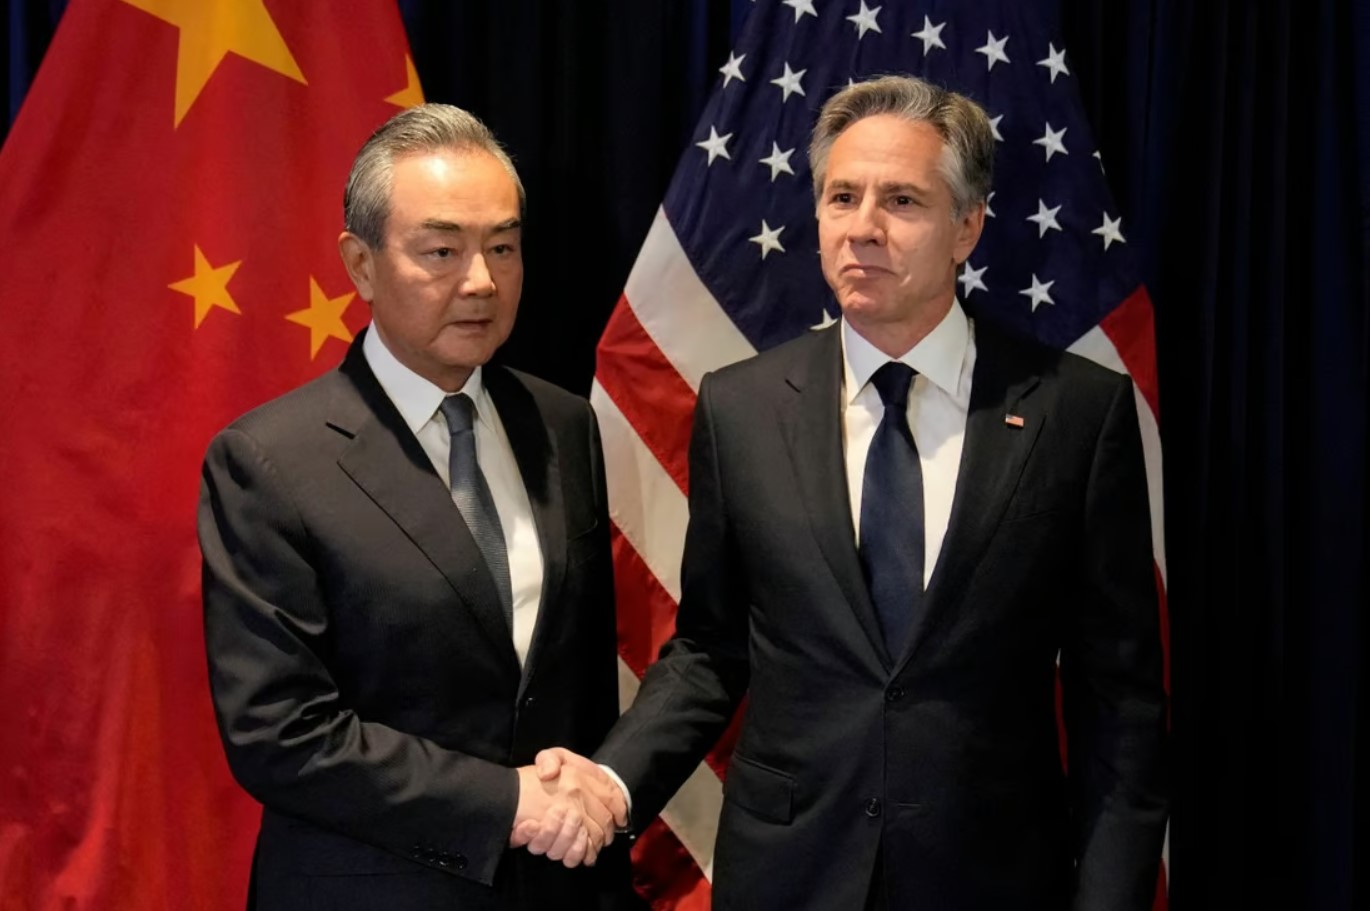 Thế giới - Ngoại trưởng Mỹ: “Trung Quốc chưa đáp lại lời mời của Washington”